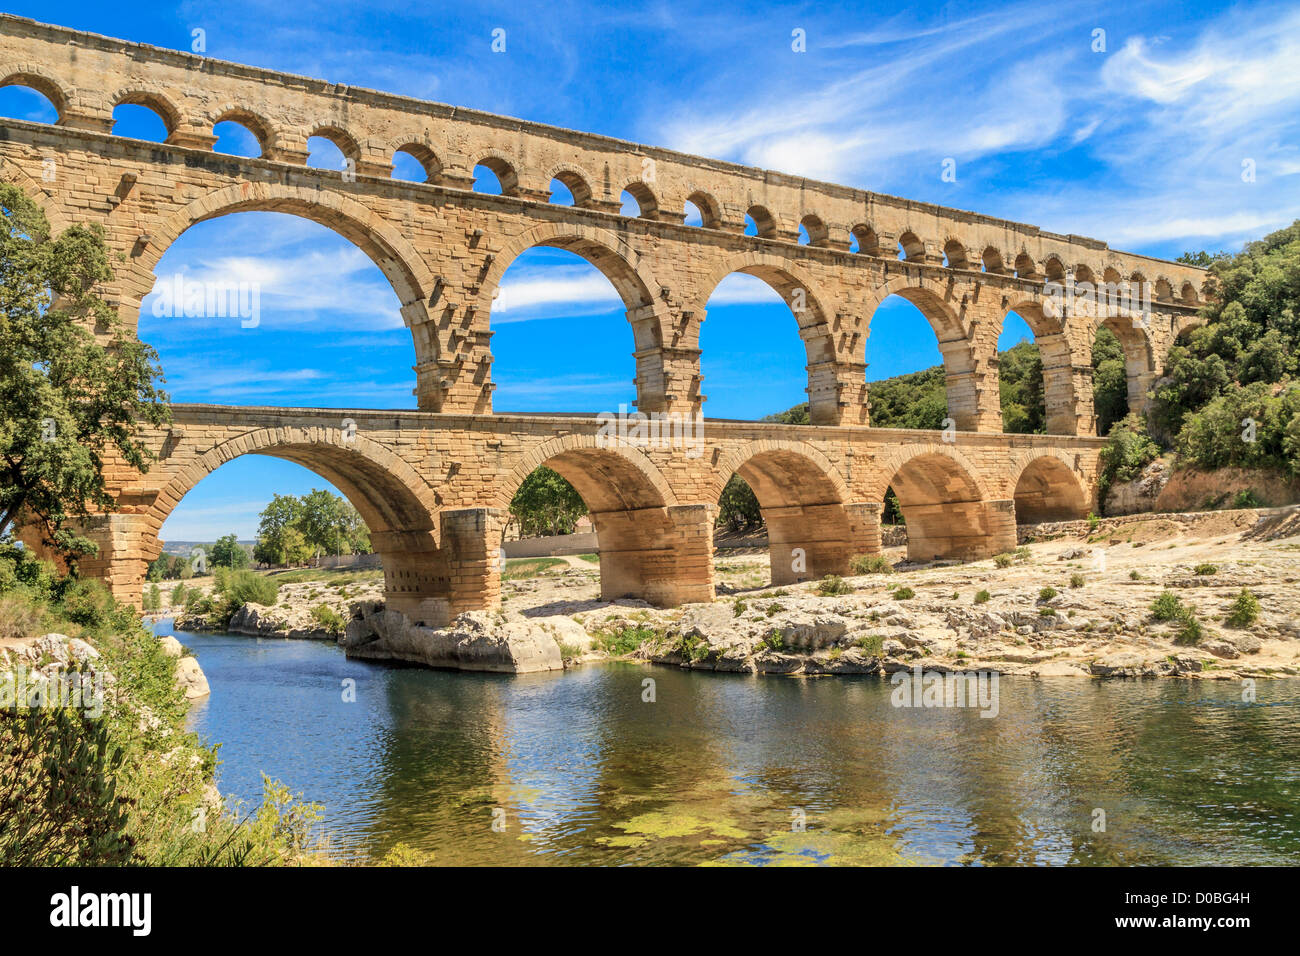 Pont du Gard ist eine alte römische Aquädukt in der Nähe von Nimes in Südfrankreich Stockfoto